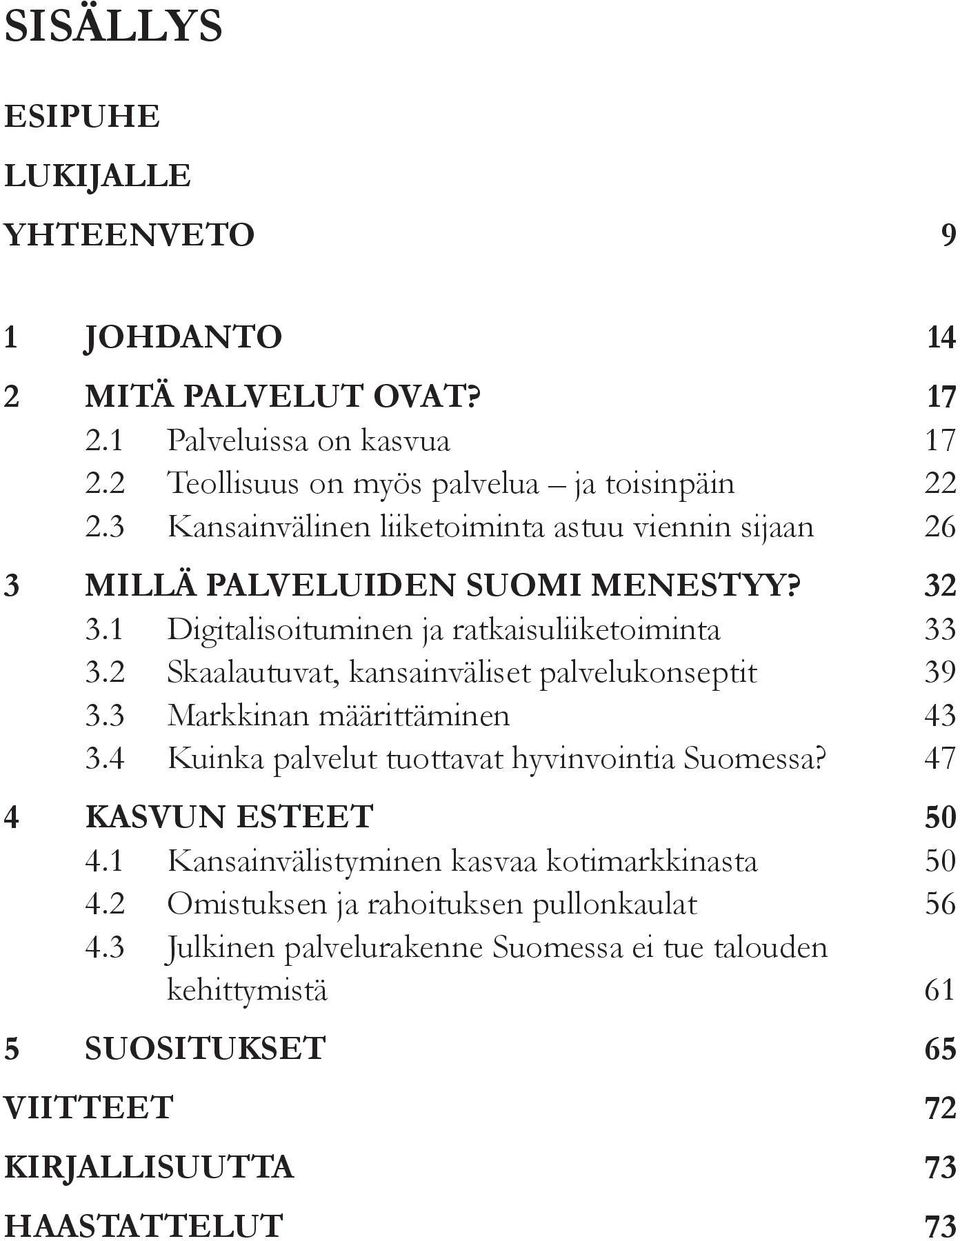 2 Skaalautuvat, kansainväliset palvelukonseptit 39 3.3 Markkinan määrittäminen 43 3.4 Kuinka palvelut tuottavat hyvinvointia Suomessa? 47 4 Kasvun esteet 50 4.